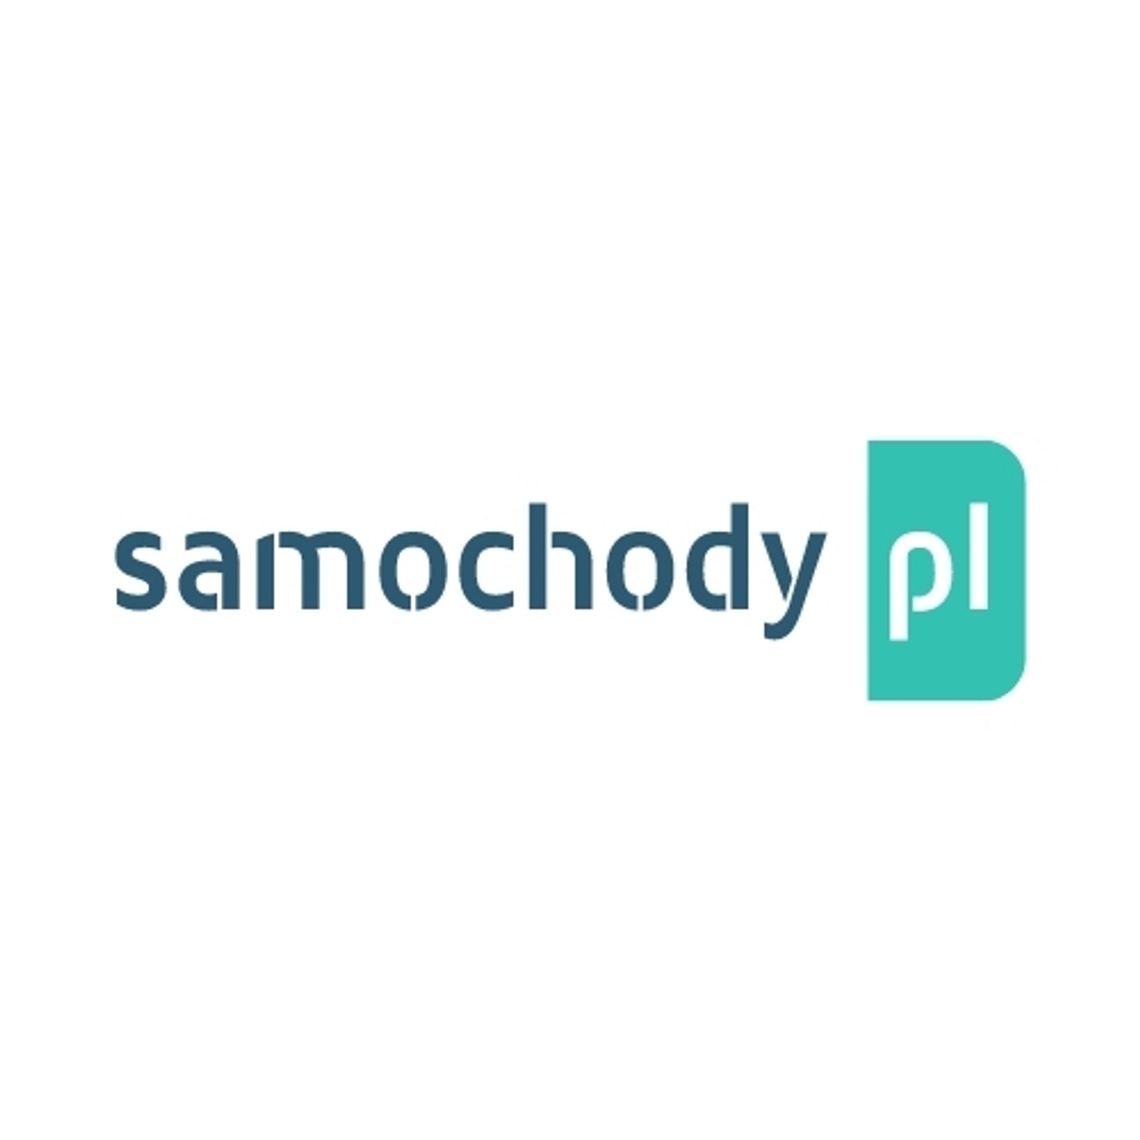 SAMOCHODY.PL - Samochody Używane - Gdańsk - Pomorskie | Auto Komis ONLINE